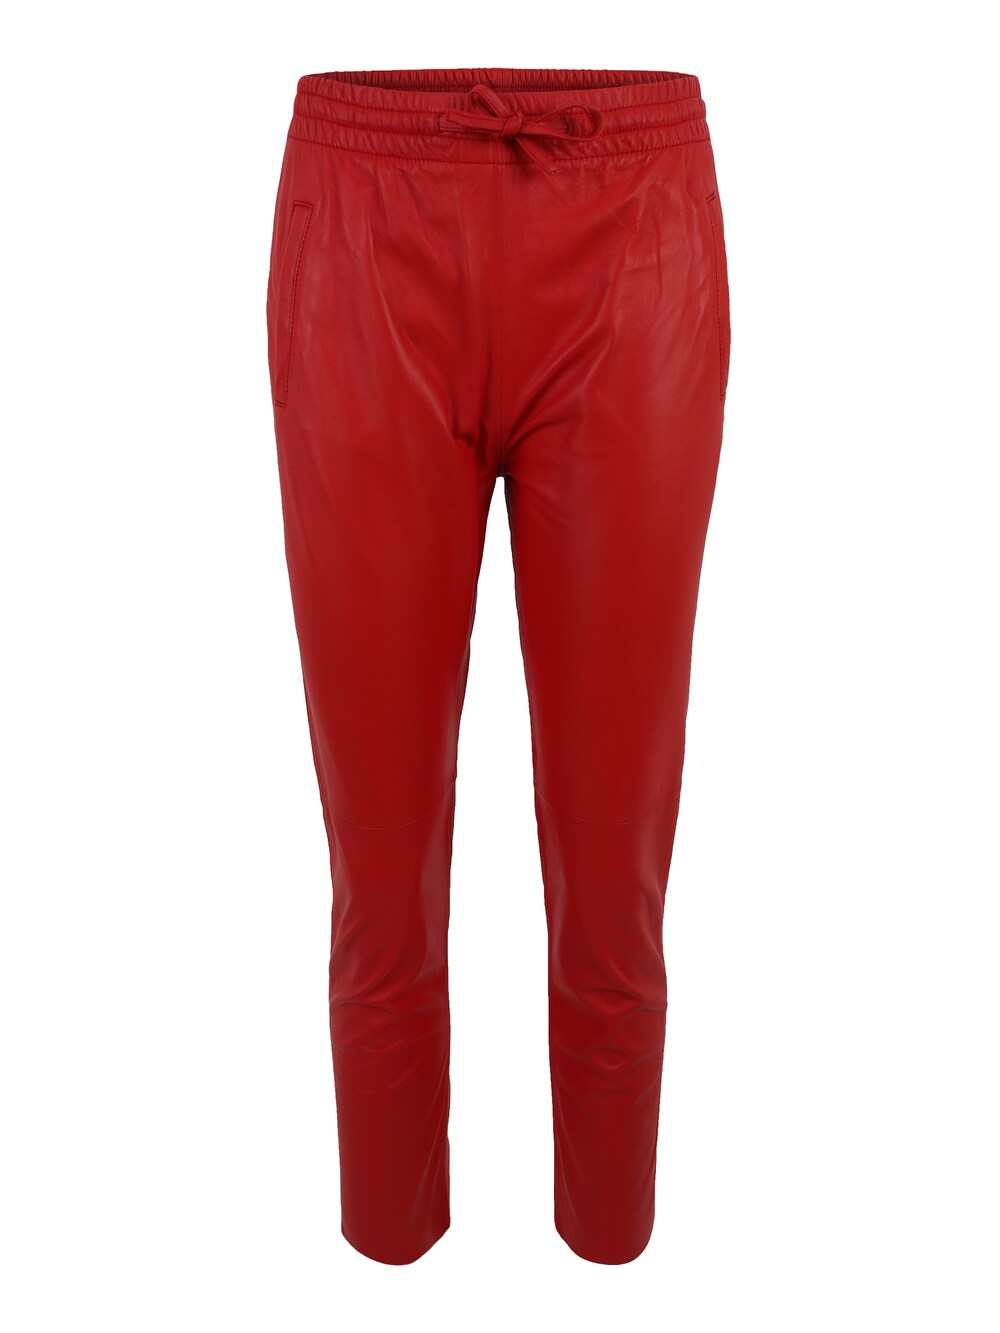 Узкие брюки Oakwood GIFT, темно-красный